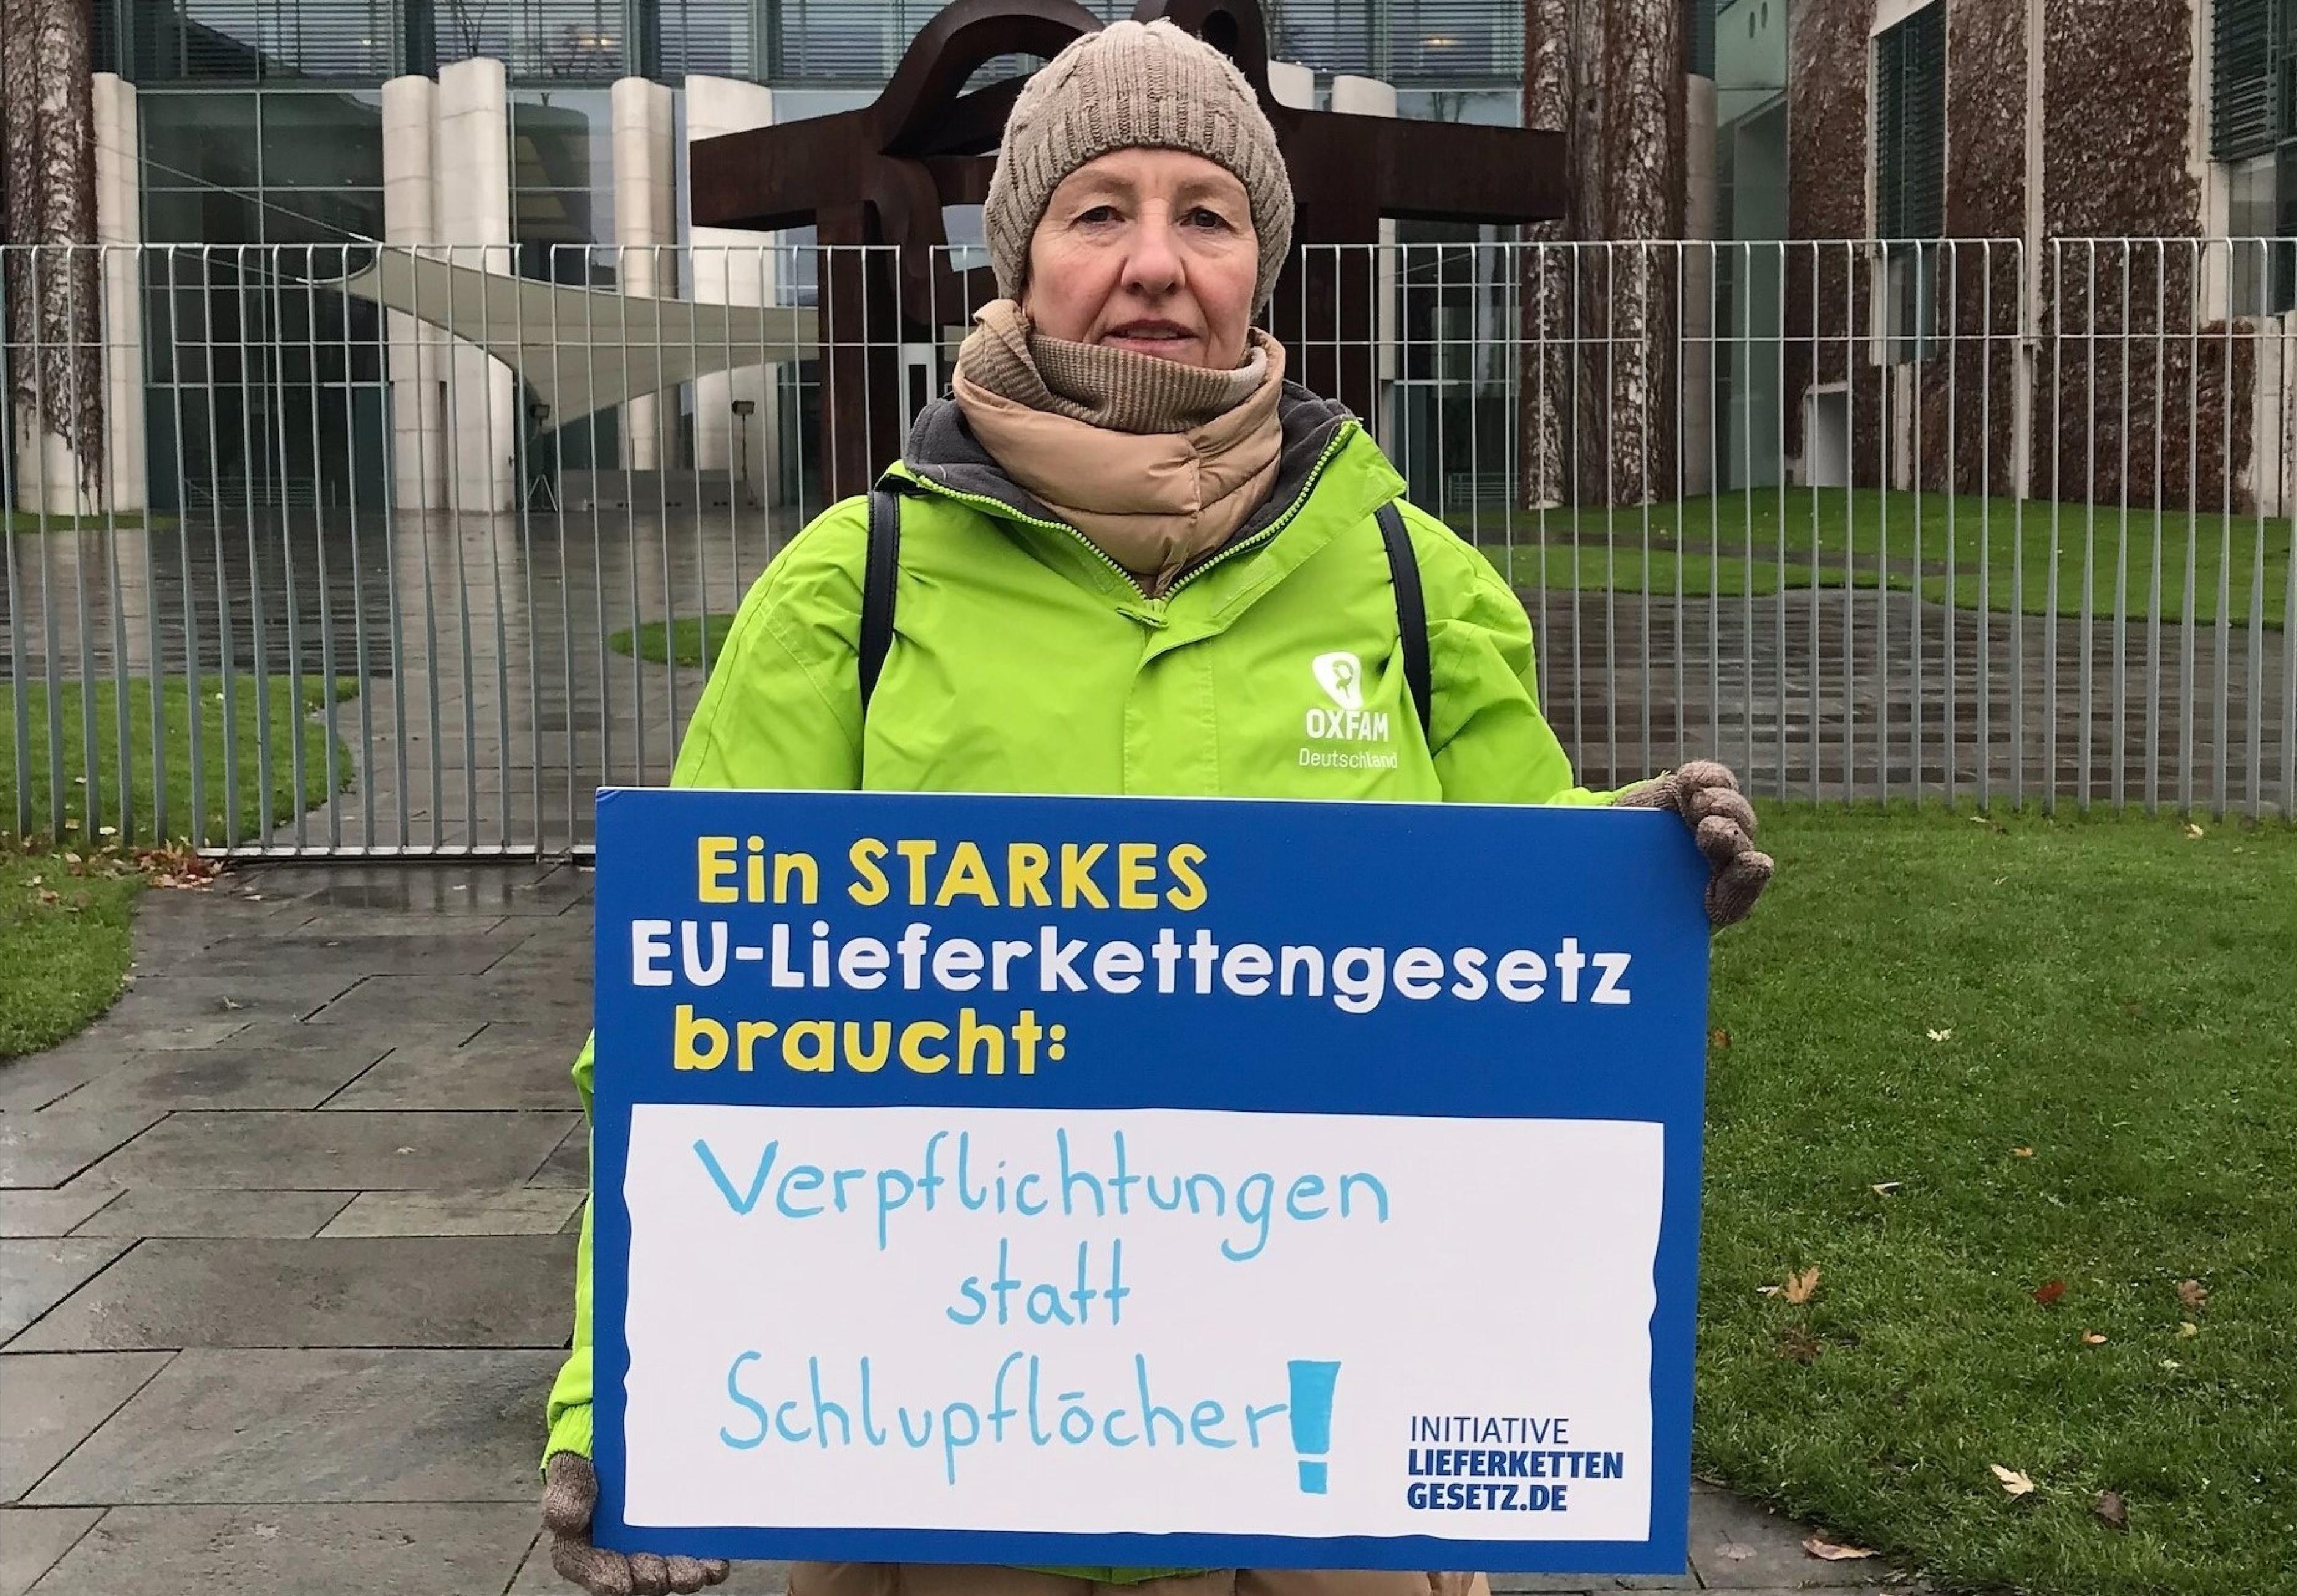 Oxfam-Ehrenamtliche, in grüner Oxfam-Jacke, vor dem Kanzleramt mit einem Schild der Initiative Lieferkettengesetz. Aufschrift: "Ein starkes EU-Lieferkettengesetz braucht: Verpflichtungen statt Schlupflöcher"